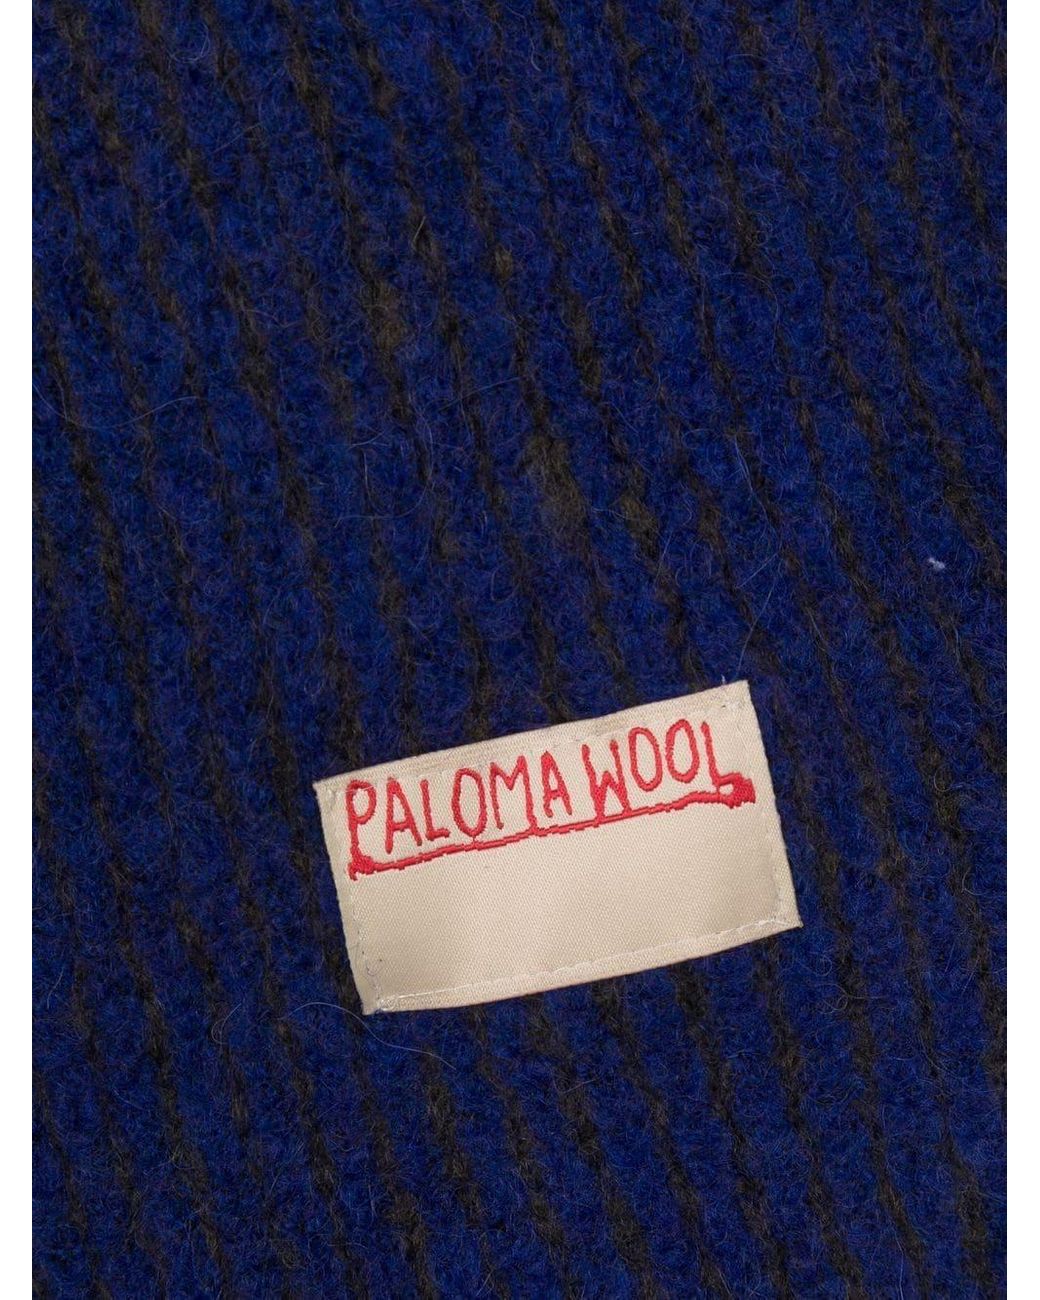 Paloma Wool No 1365 / Tito